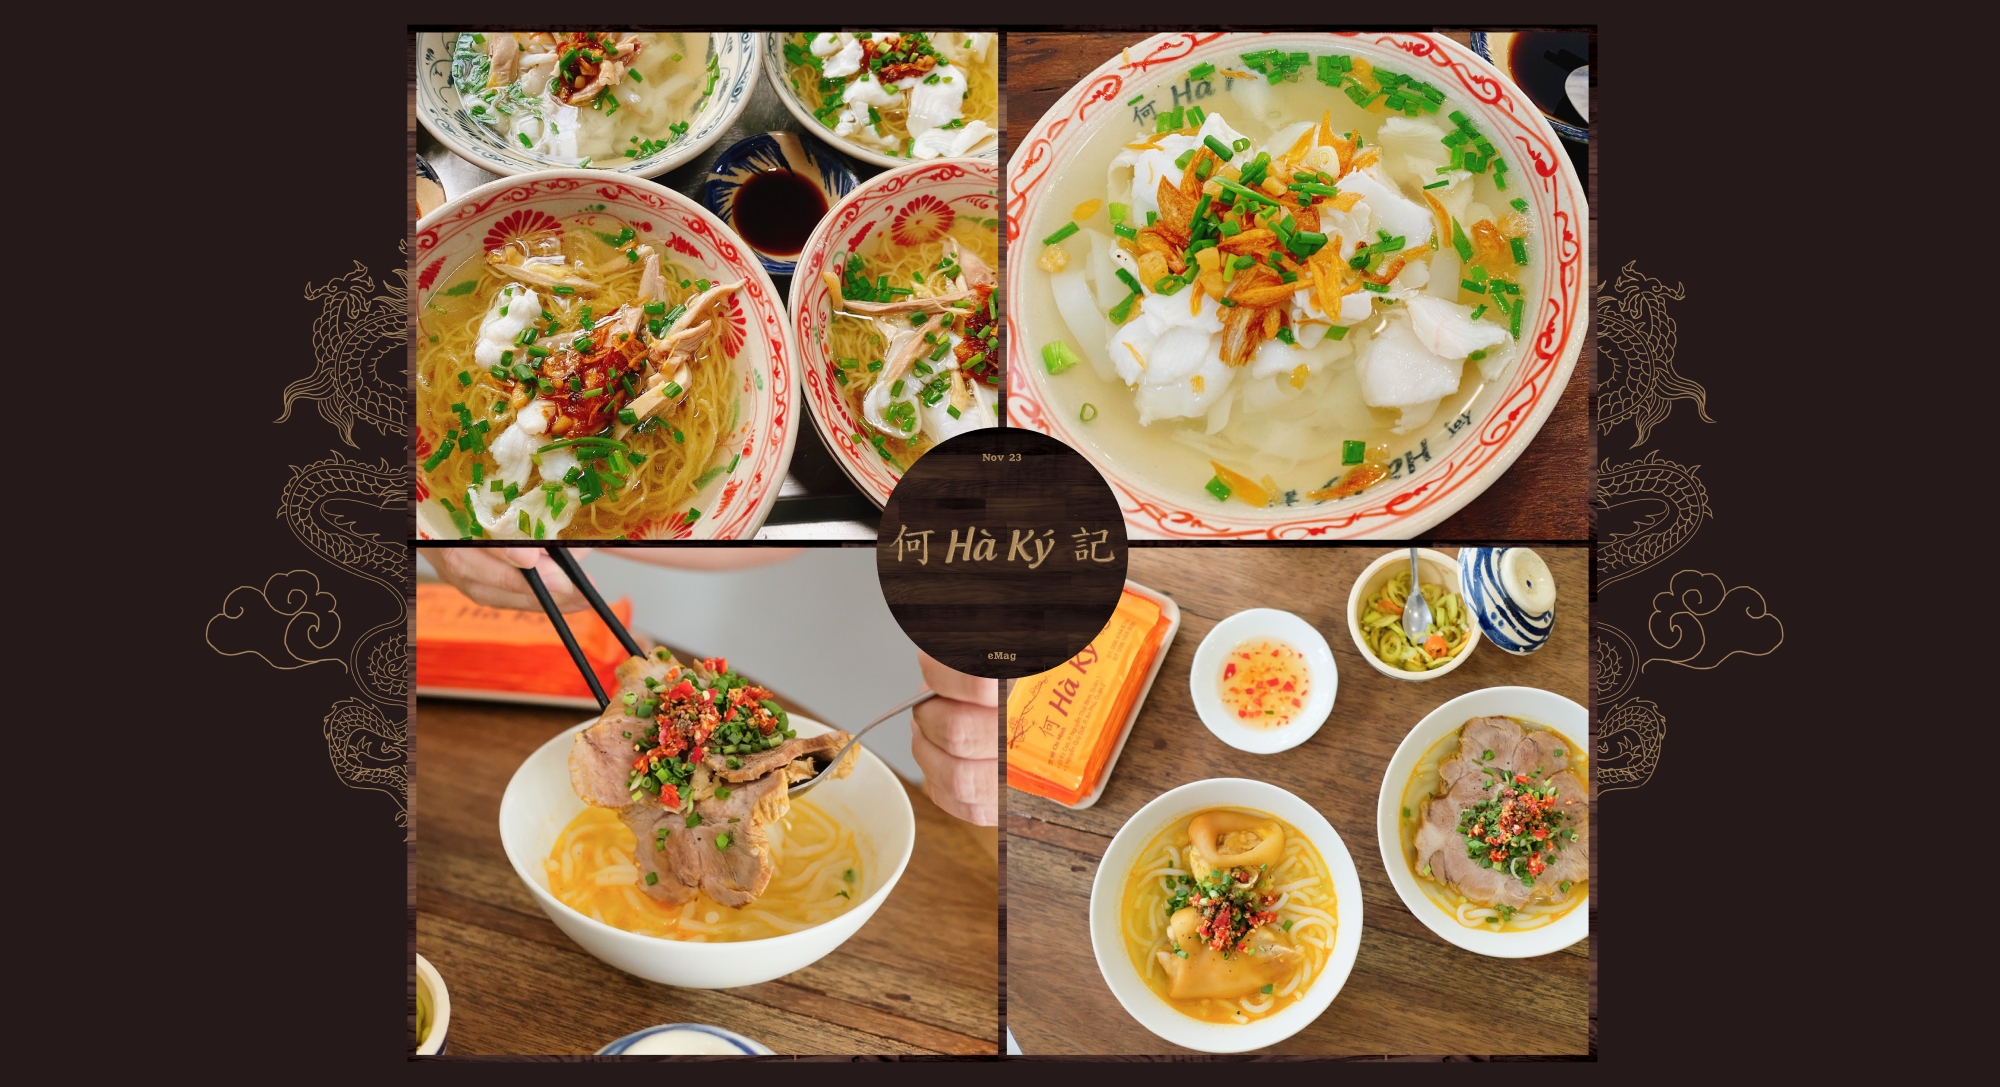 Không chỉ là một quán mì, Hà Ký còn là nơi gói ghém cái tâm vào hương vị từng món ăn - Ảnh 6.